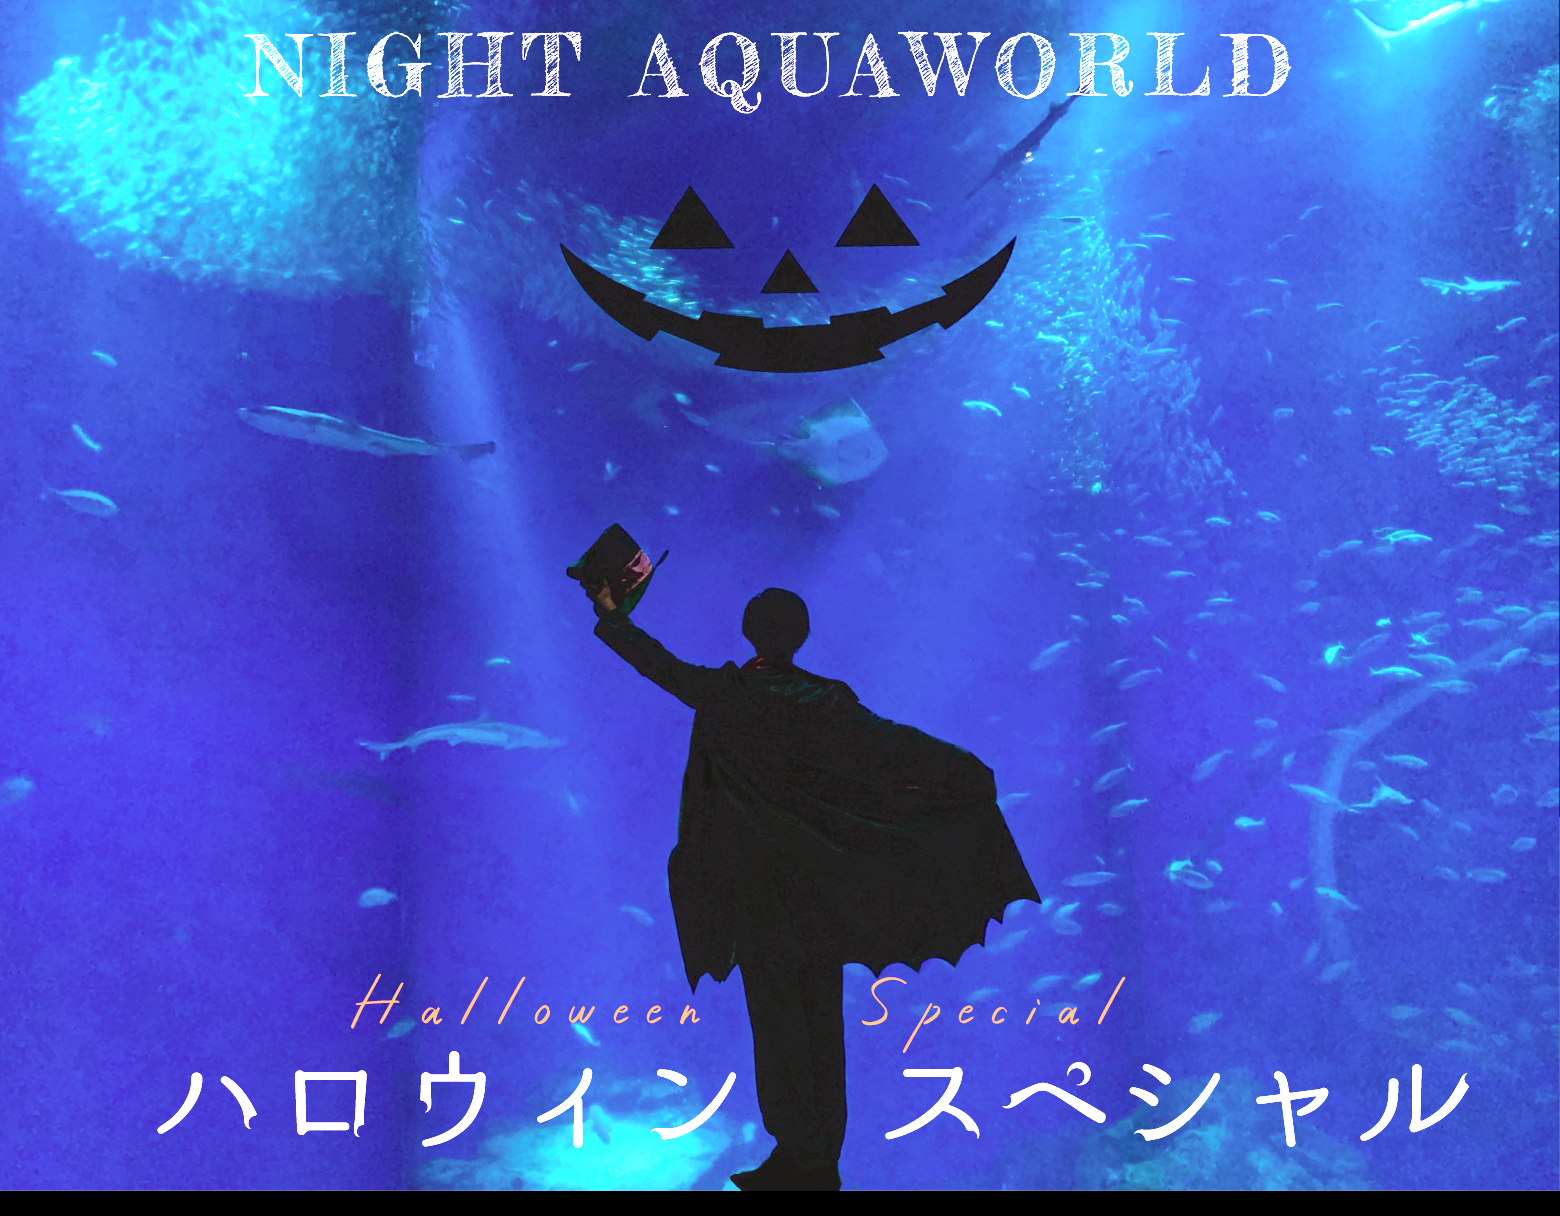 Đặc biệt Halloween “NIGHT AQUAWORLD” giới hạn ngày 10 và 21 tháng 28